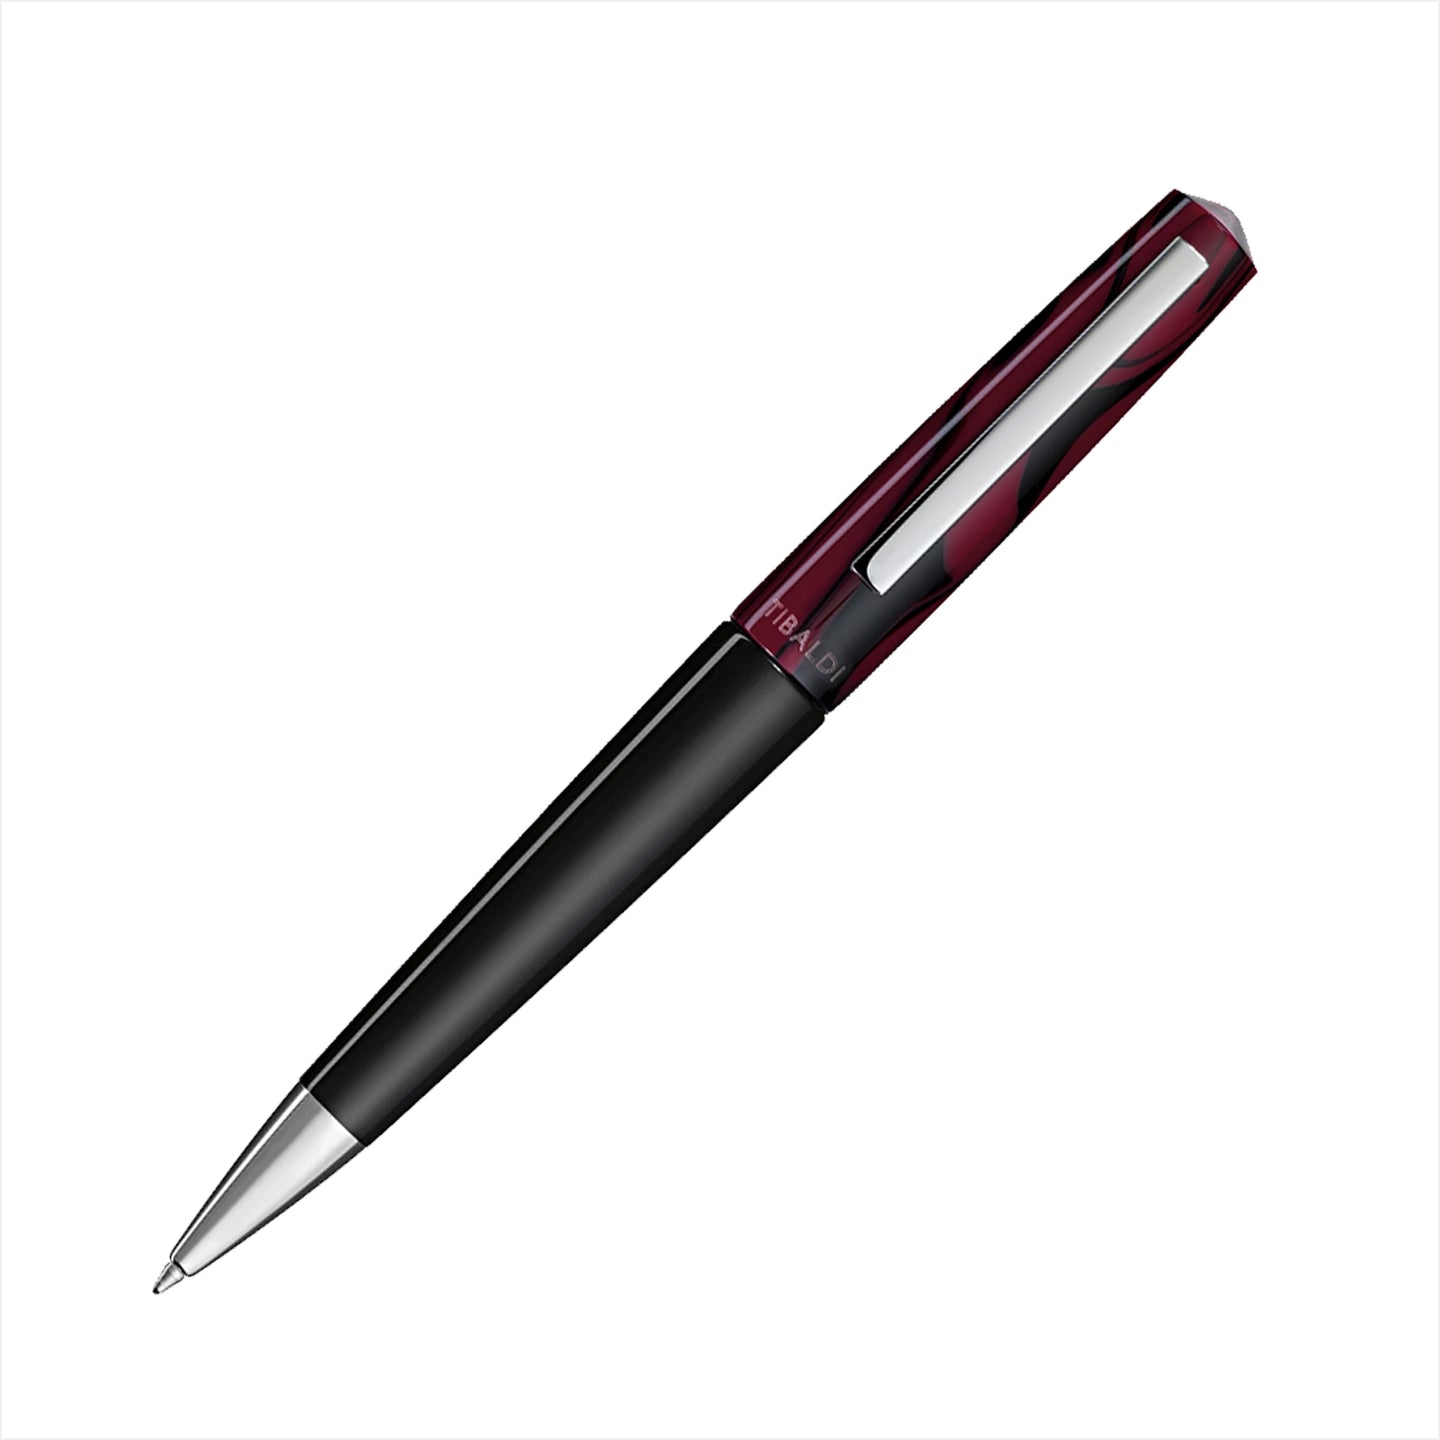 Ein wirklich schöner TIBALDI Infrangibile Kugelschreiber in edler Ausführung.